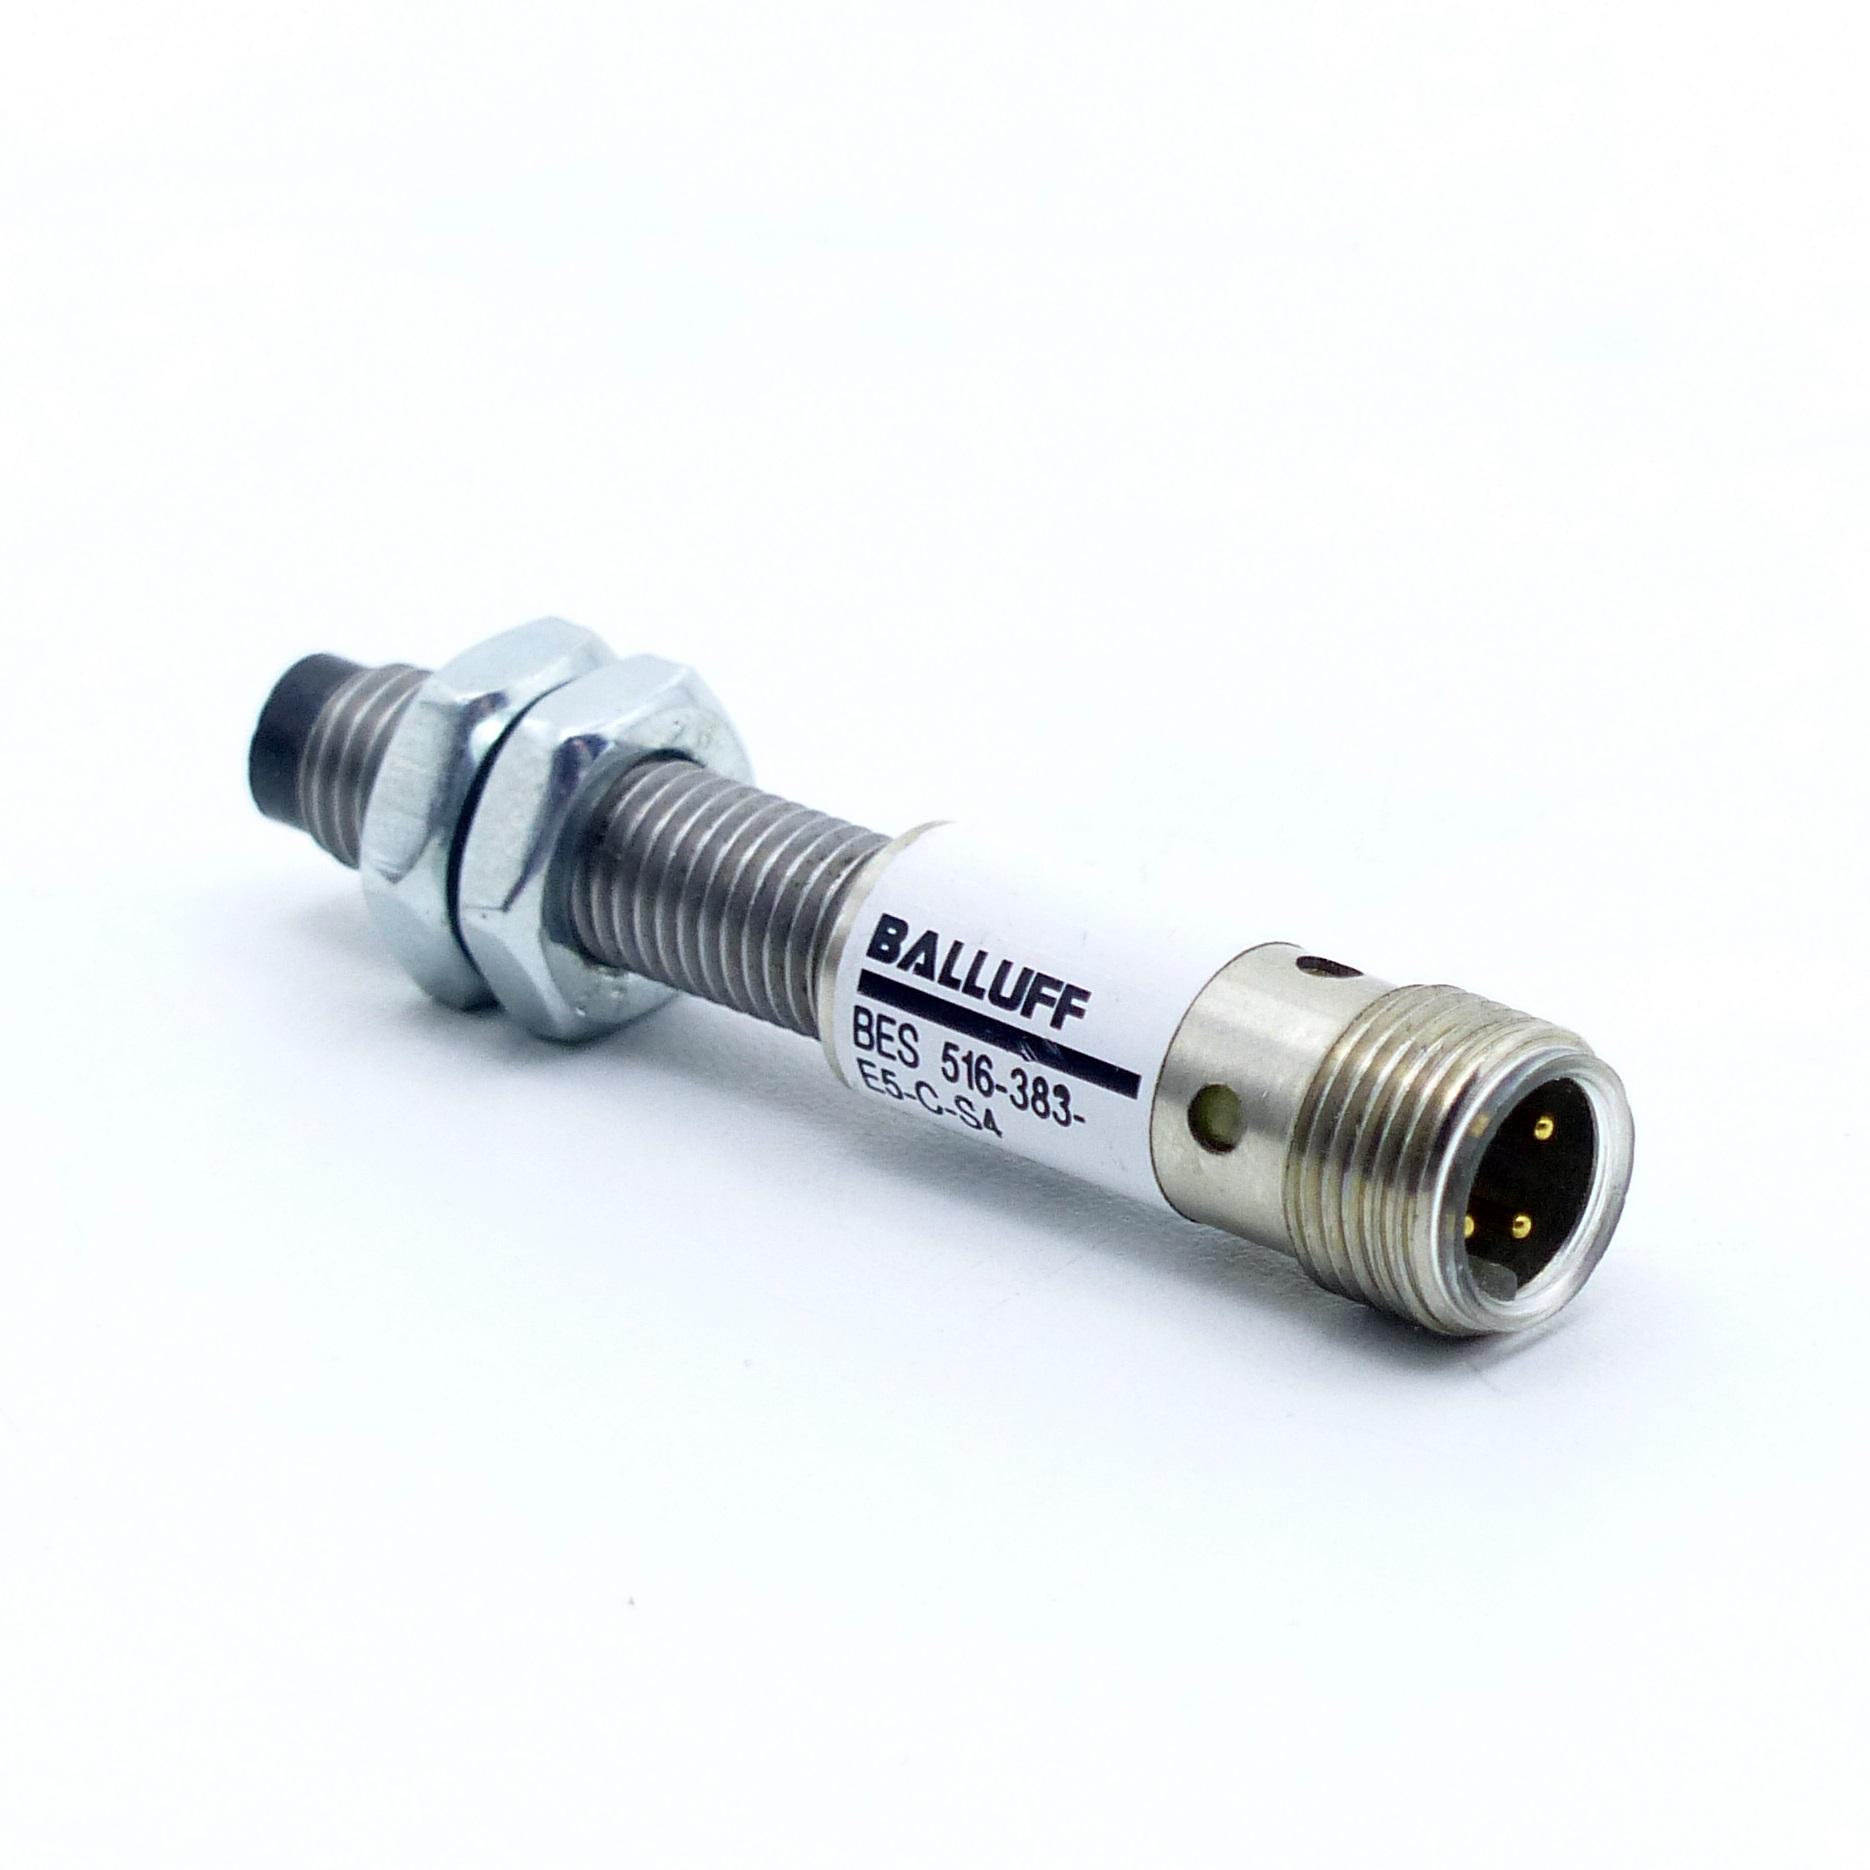 BALLUFF Sensor Induktiv BES 516-383-E5-C-S4